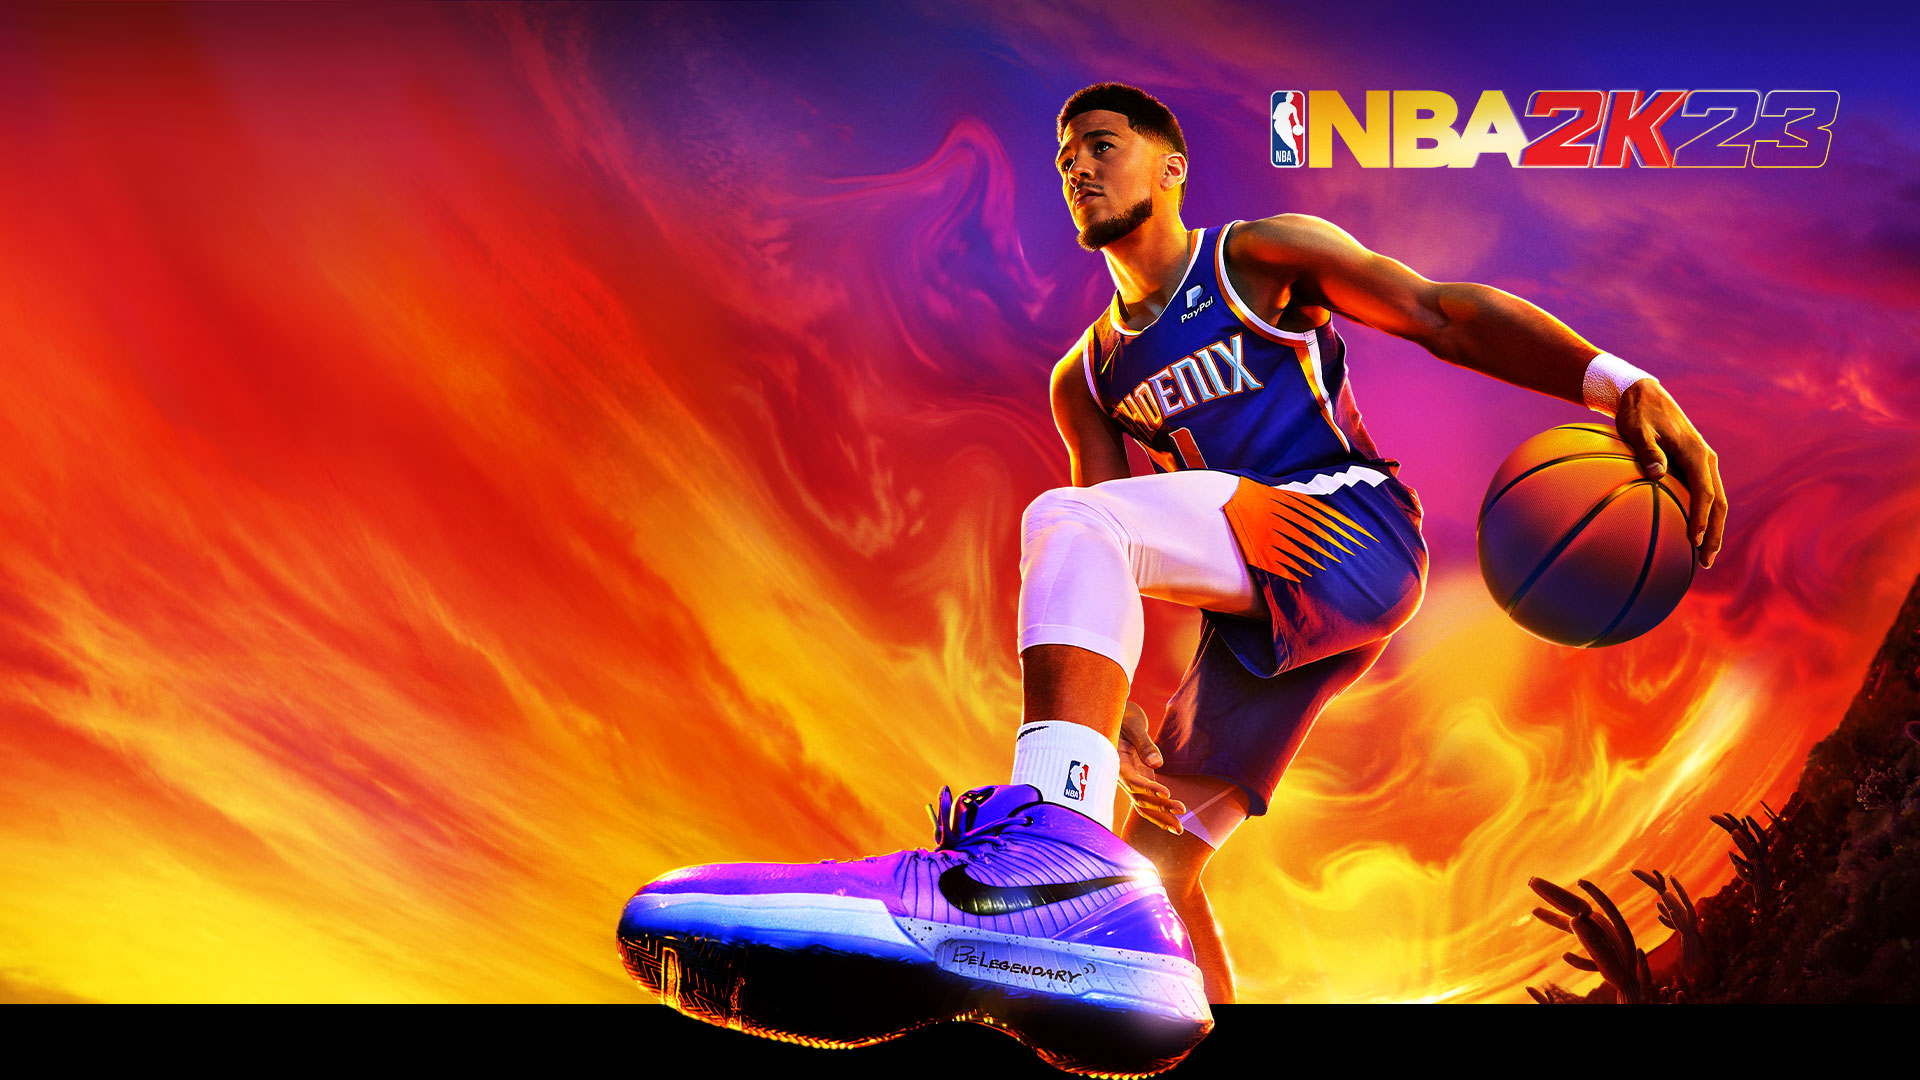 NBA 2K23, Devin Booker, nummer ett för Phoenix Suns, dribblar en basketboll under en färgstark ökenhimmel.